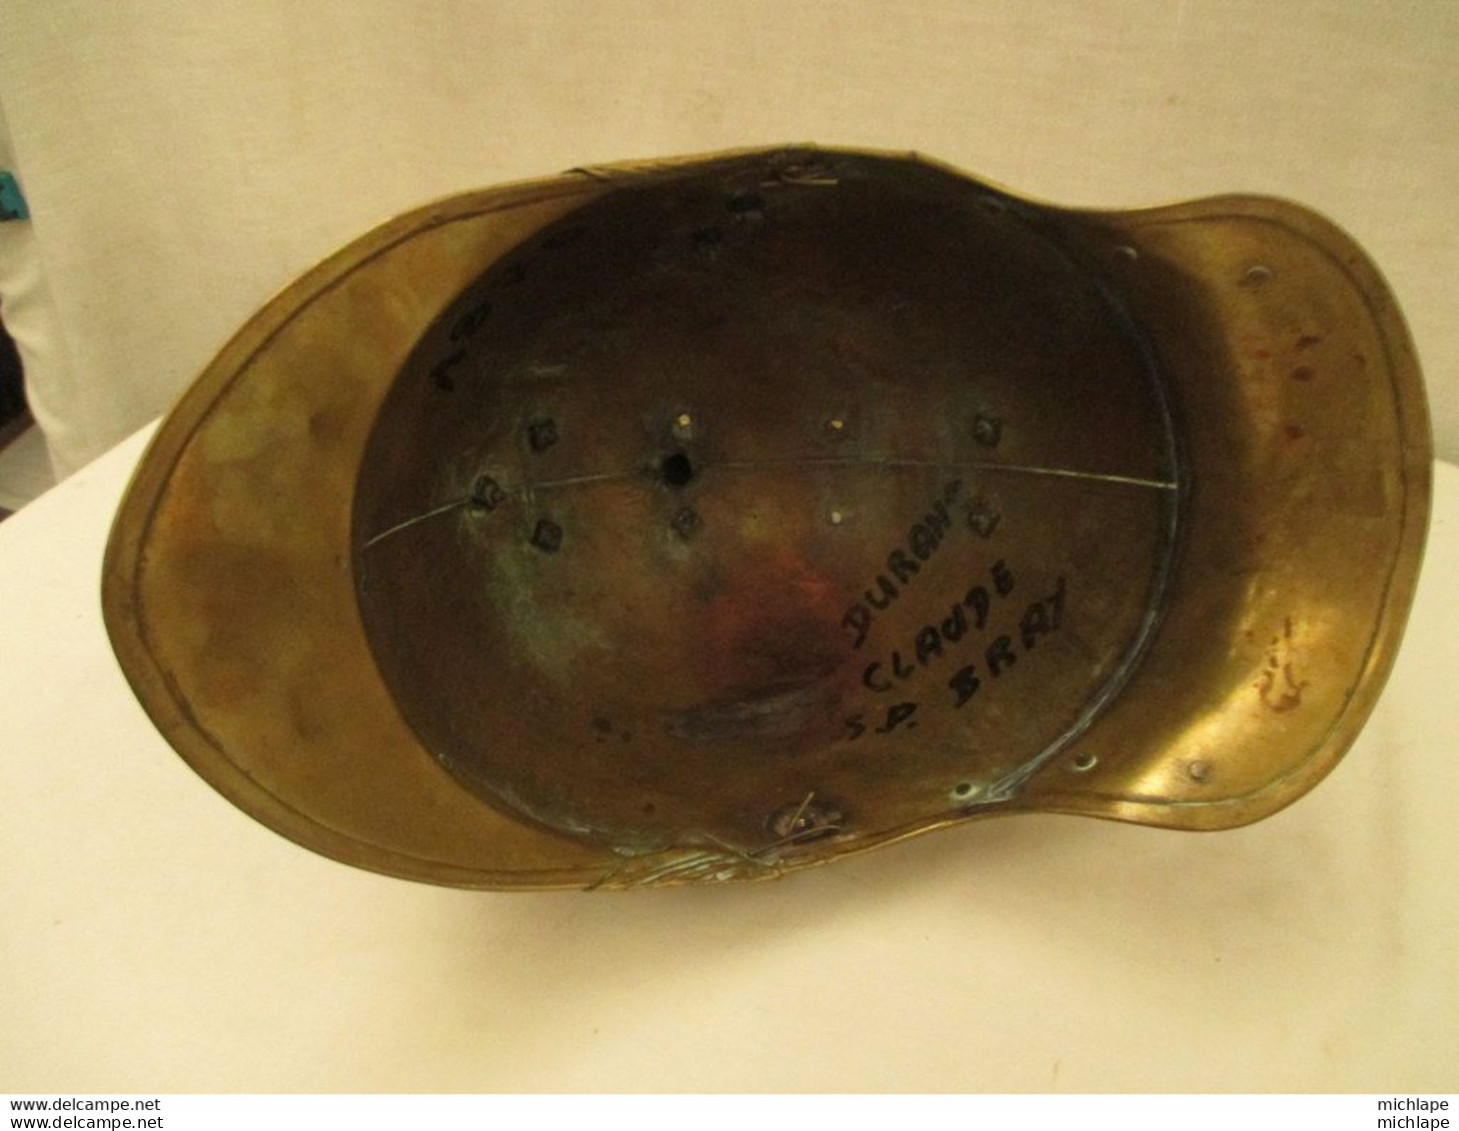 beau casque de pompier vers 1870 a compléter - ville de bray sur seine 77 - petites bosses d'usage